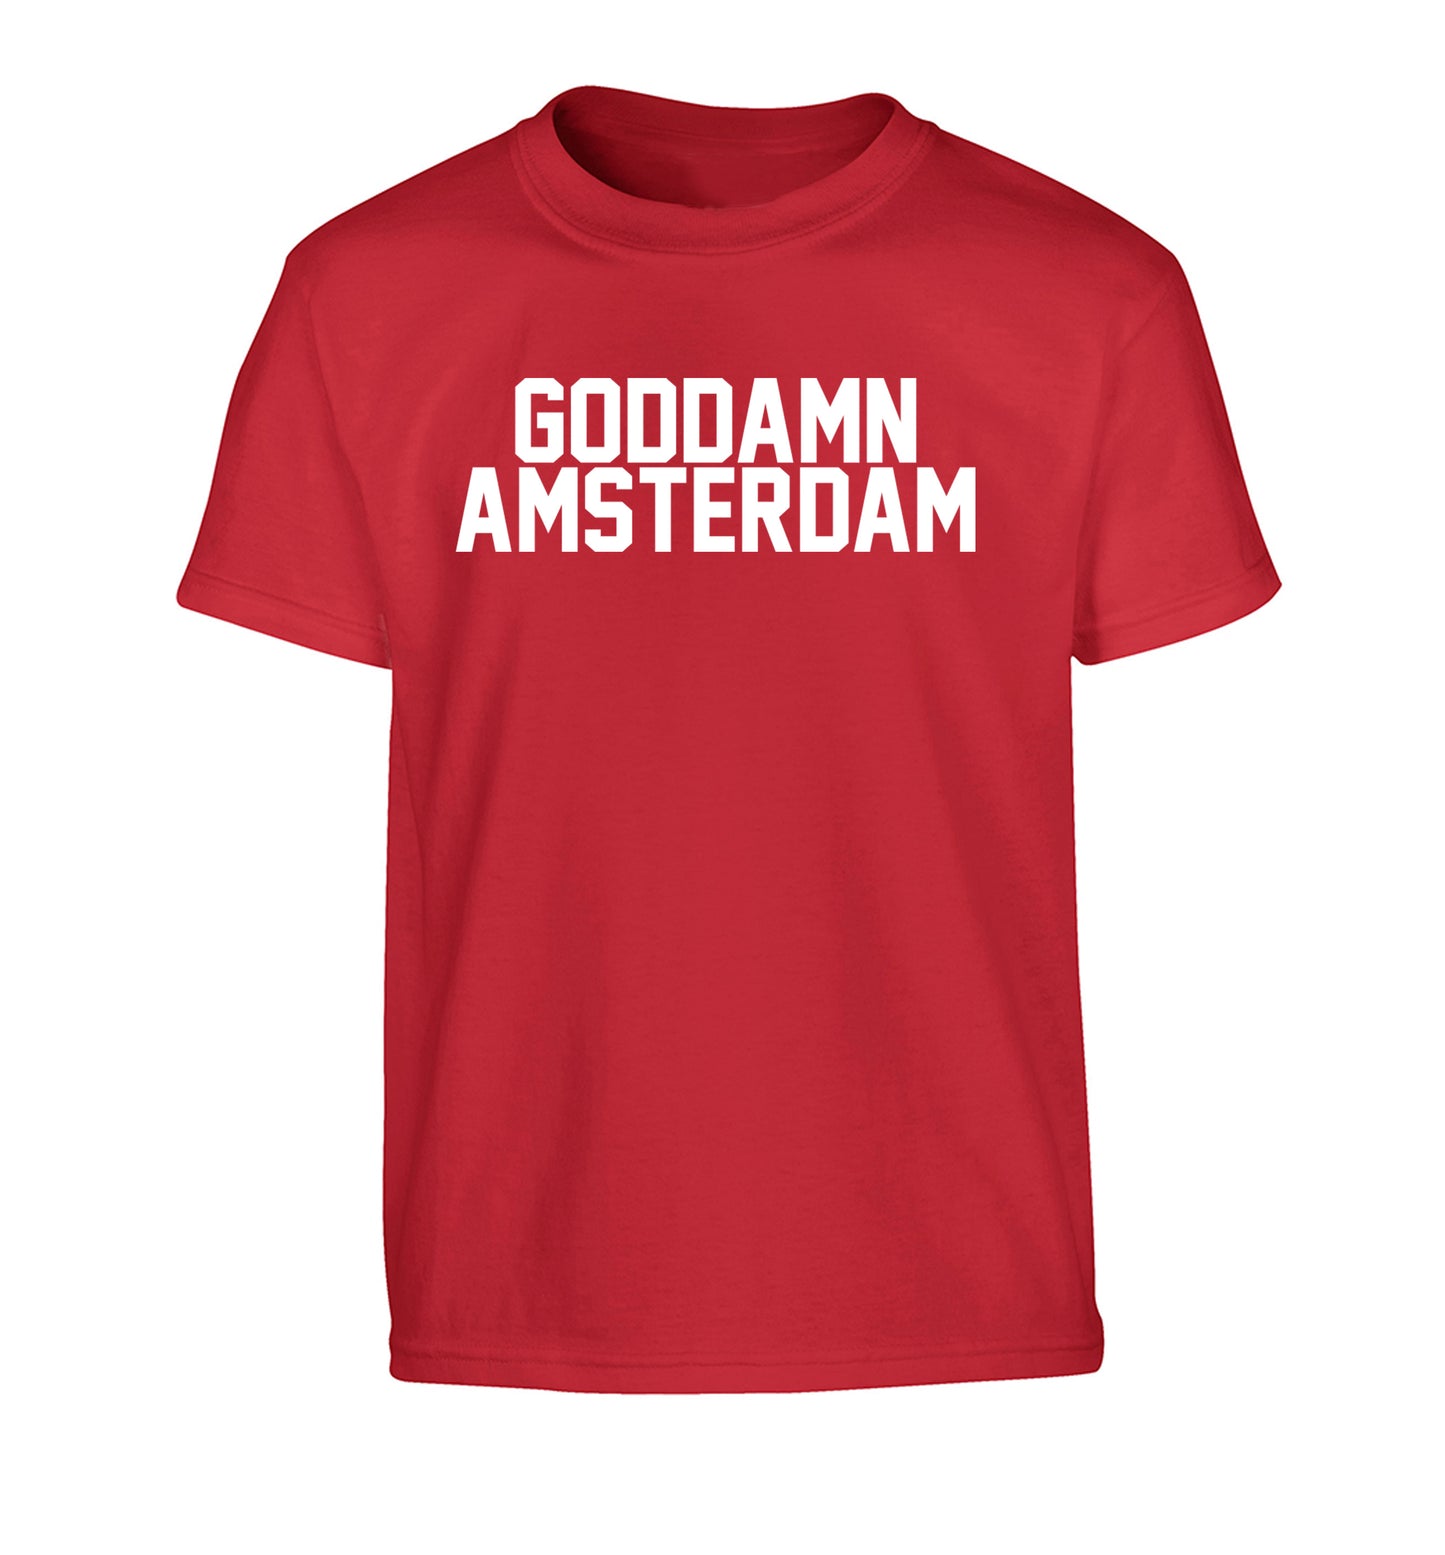 Goddamn Amsterdam Children's red Tshirt 12-13 Years